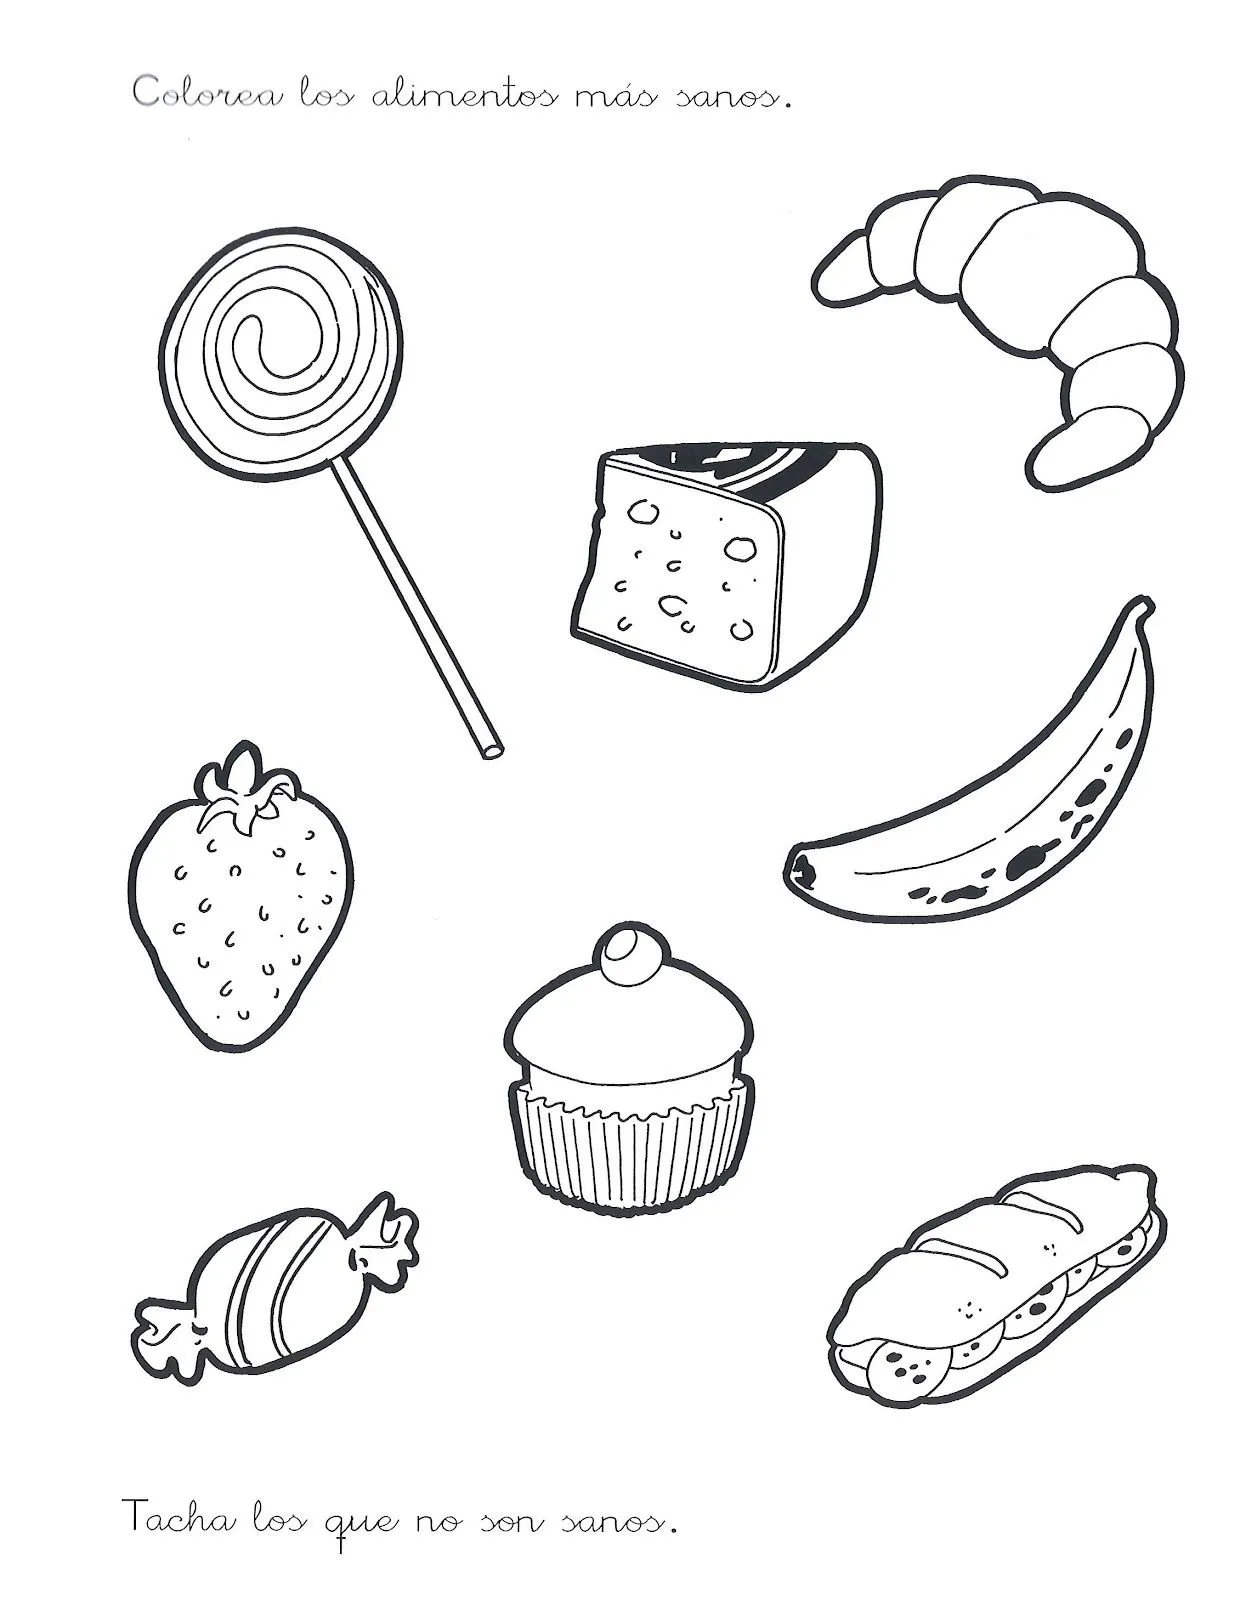 Imagenes de comida saludable y chatarra para colorear - Imagui